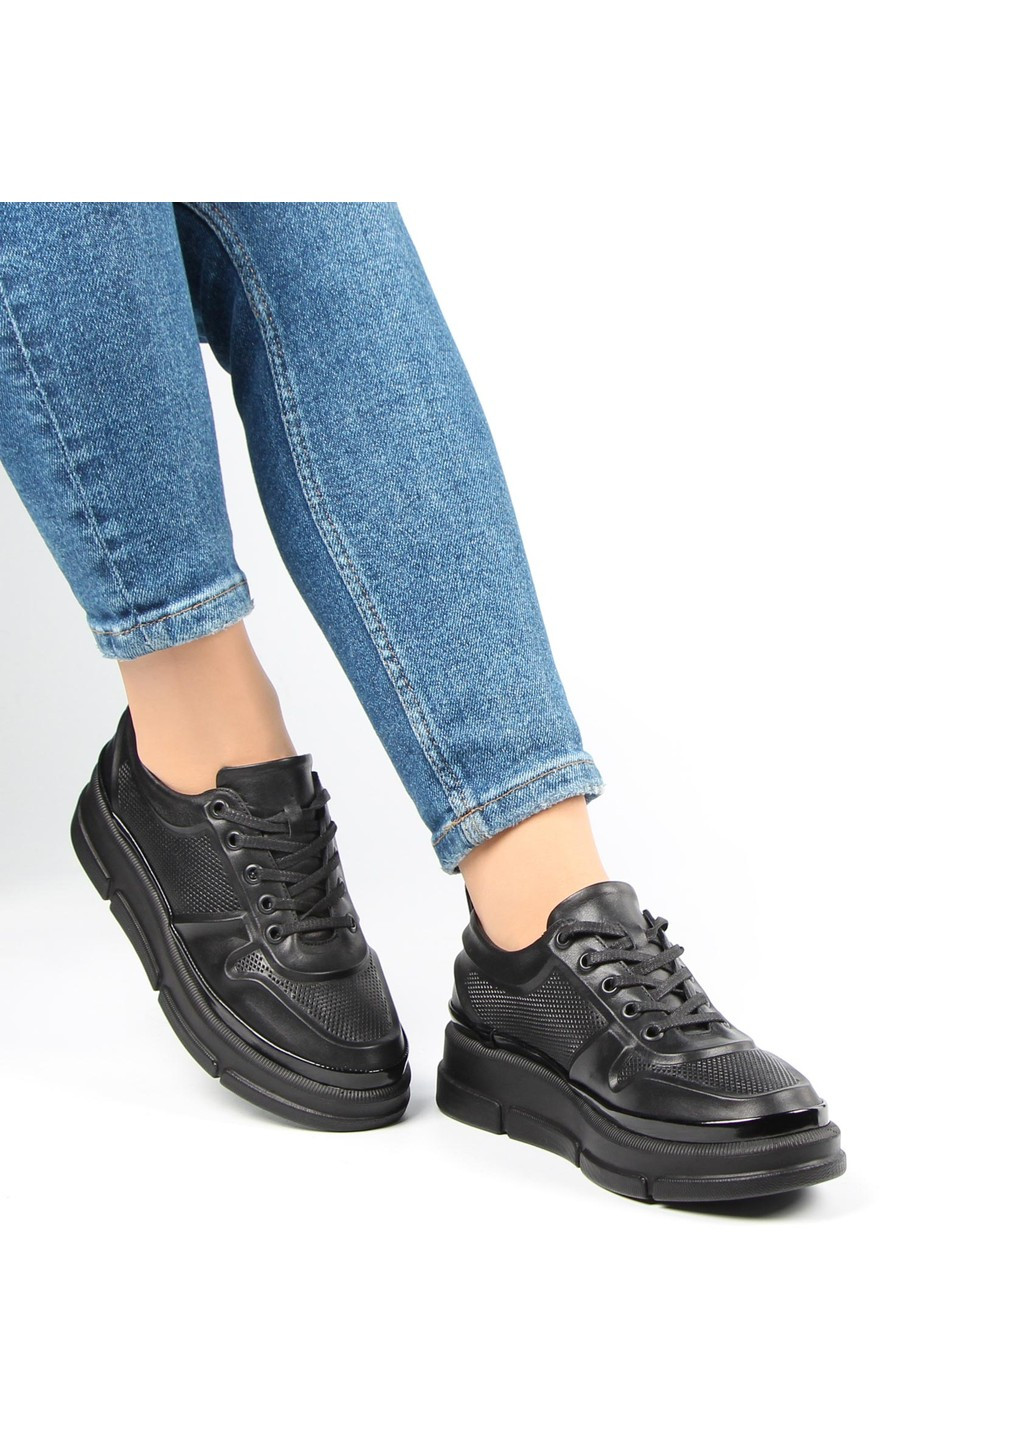 Черные демисезонные женские кроссовки 197163 Buts